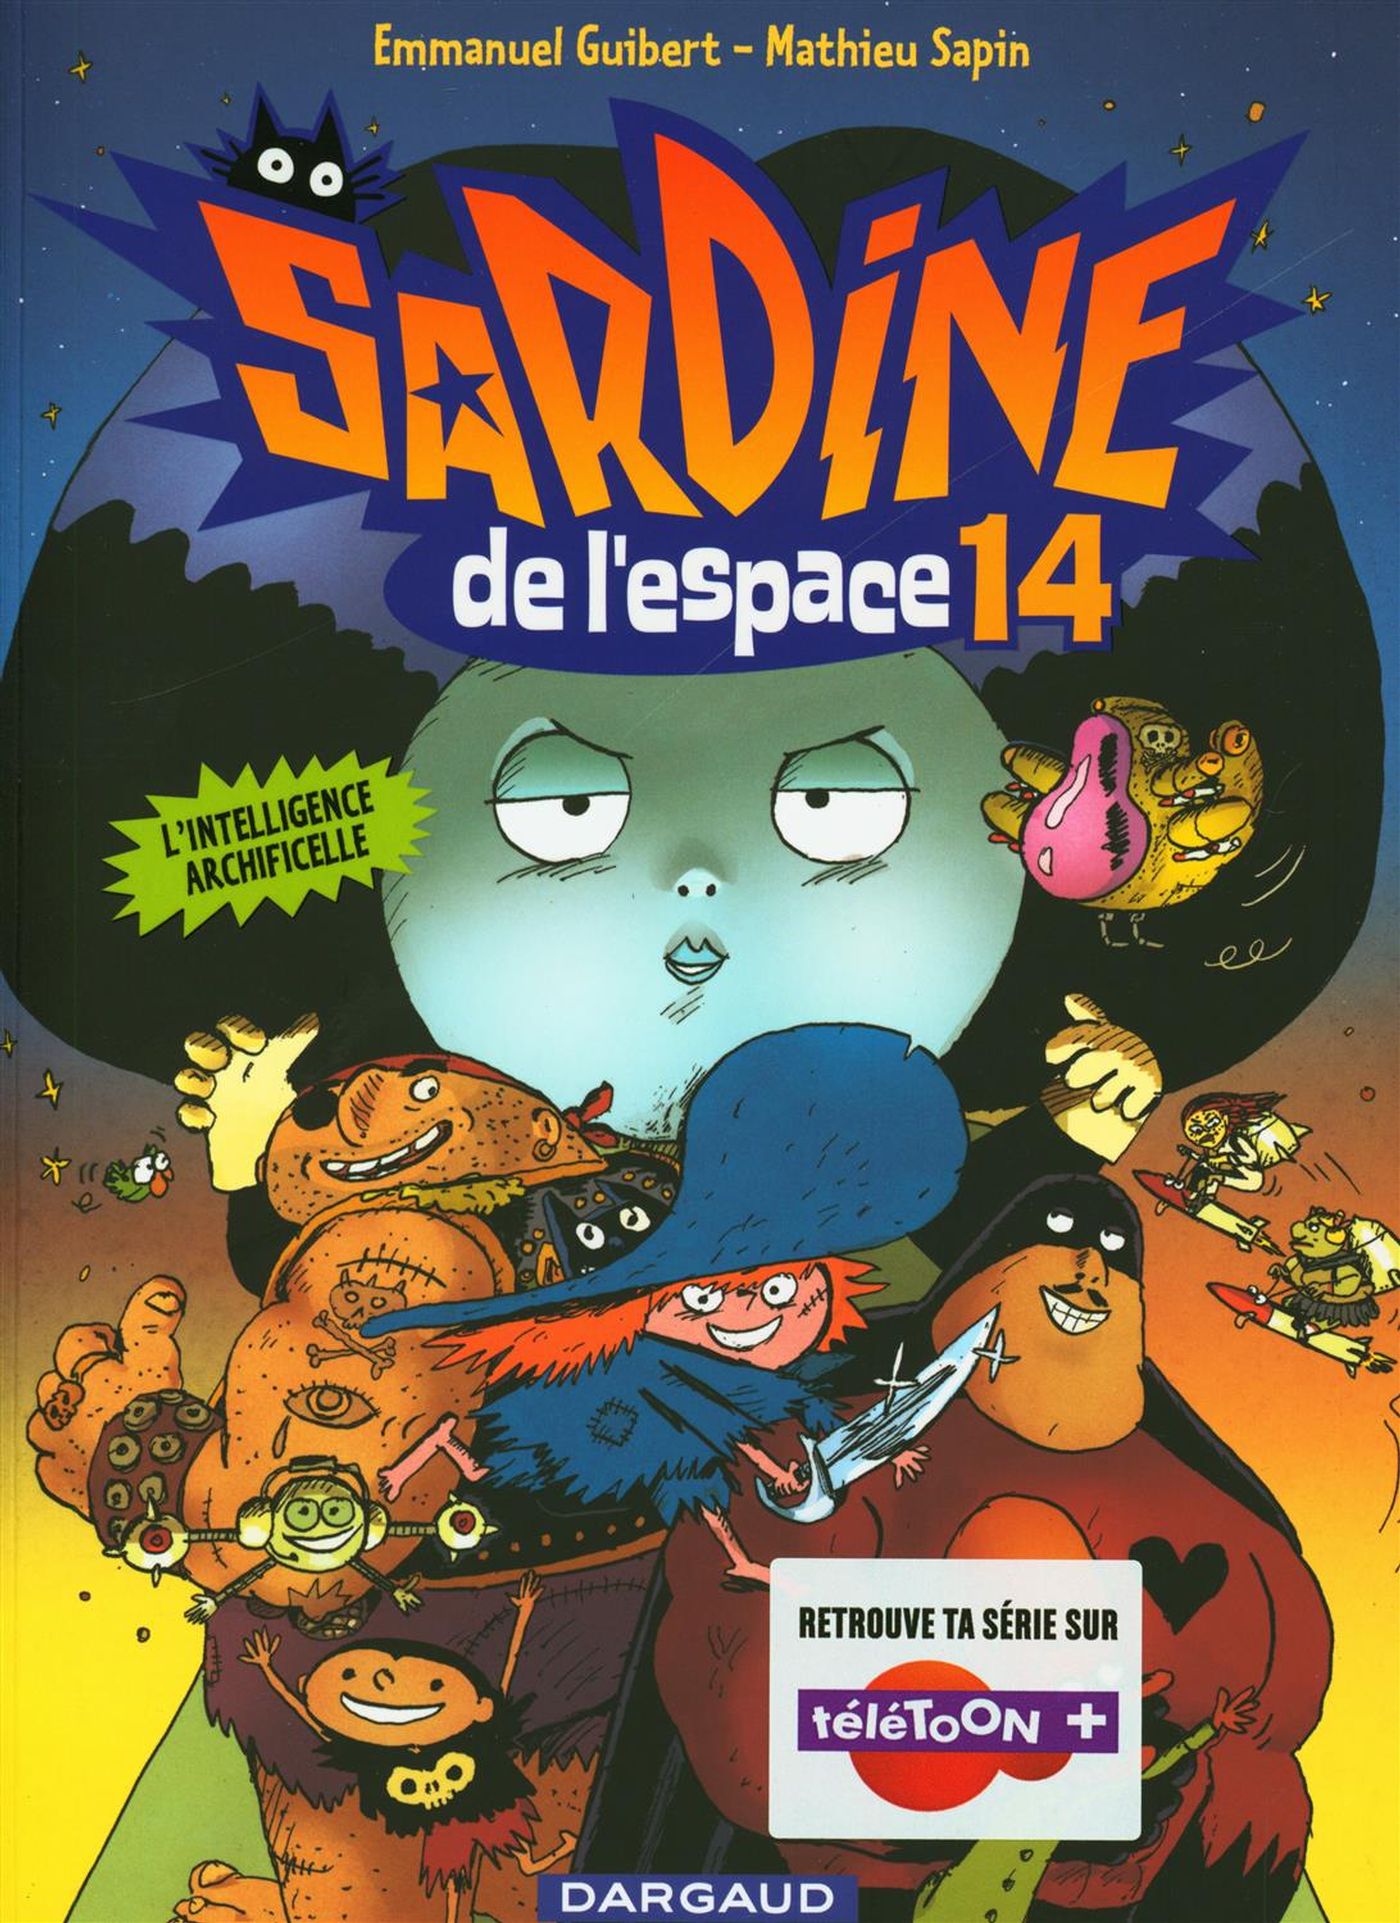 Sardines de l'espace # 14 : L'intelligence Archificelle - Emmanuel Guibert